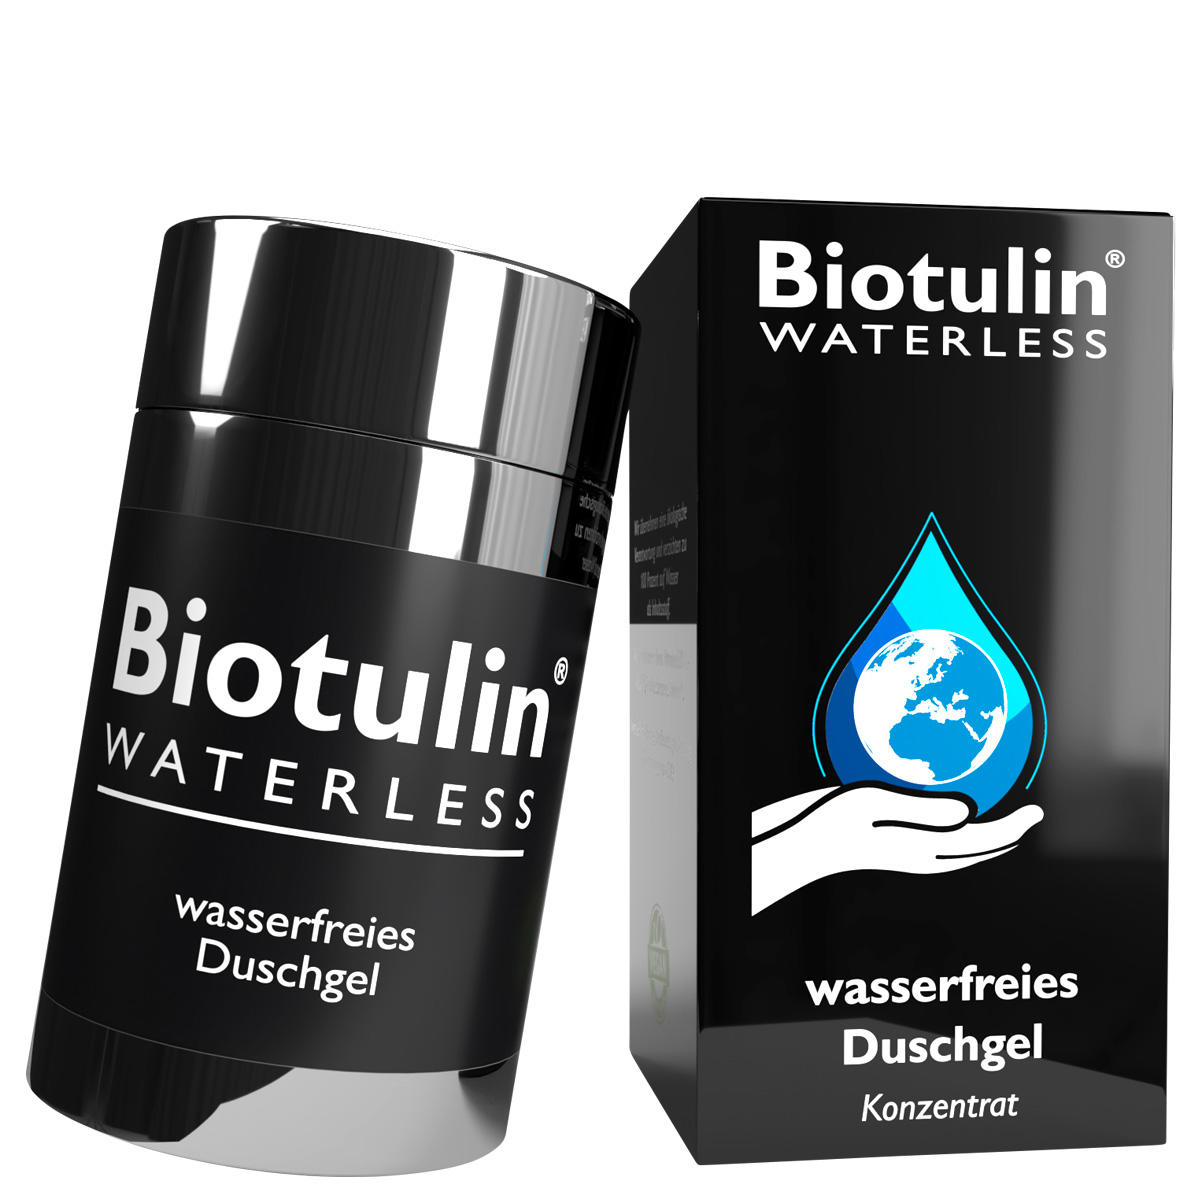 Biotulin WATERLESS waterless shower gel 70 g - 2